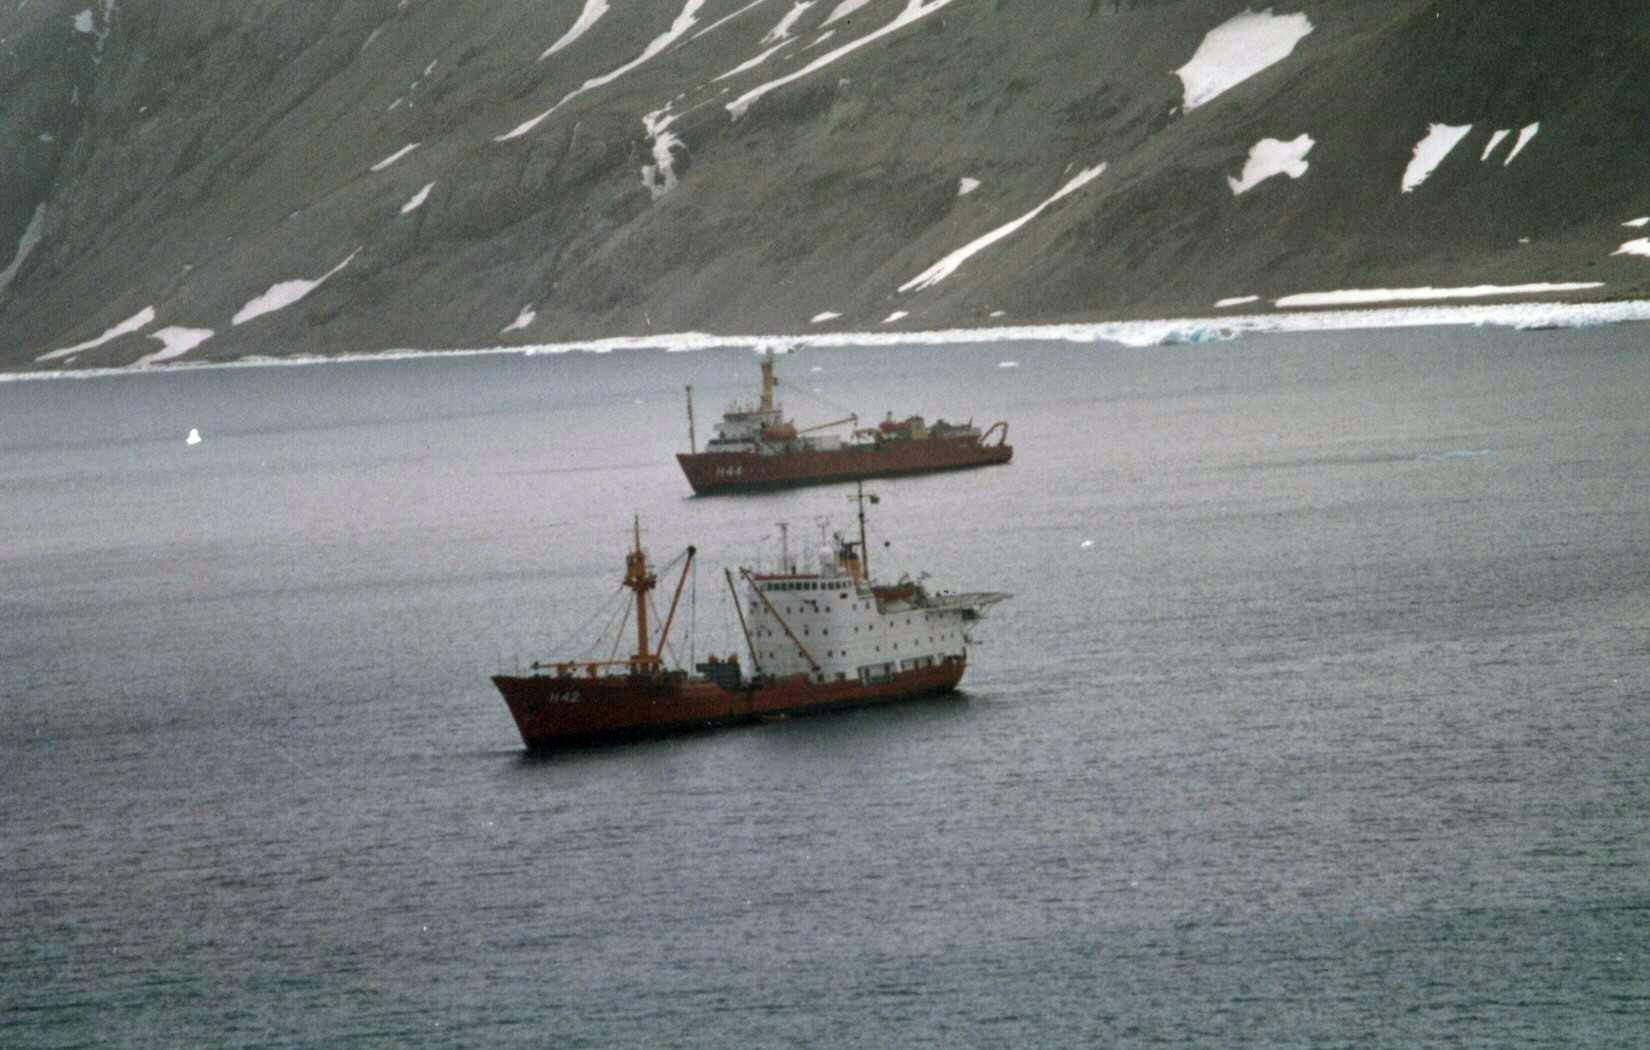 O NApOc Barão de Teffé e ao fundo o NApOc Ary Rongel, juntos no Continente Antártico em 1994. O primeiro realizava sua última comissão a região e o segundo a sua primeira. (foto: SDM)